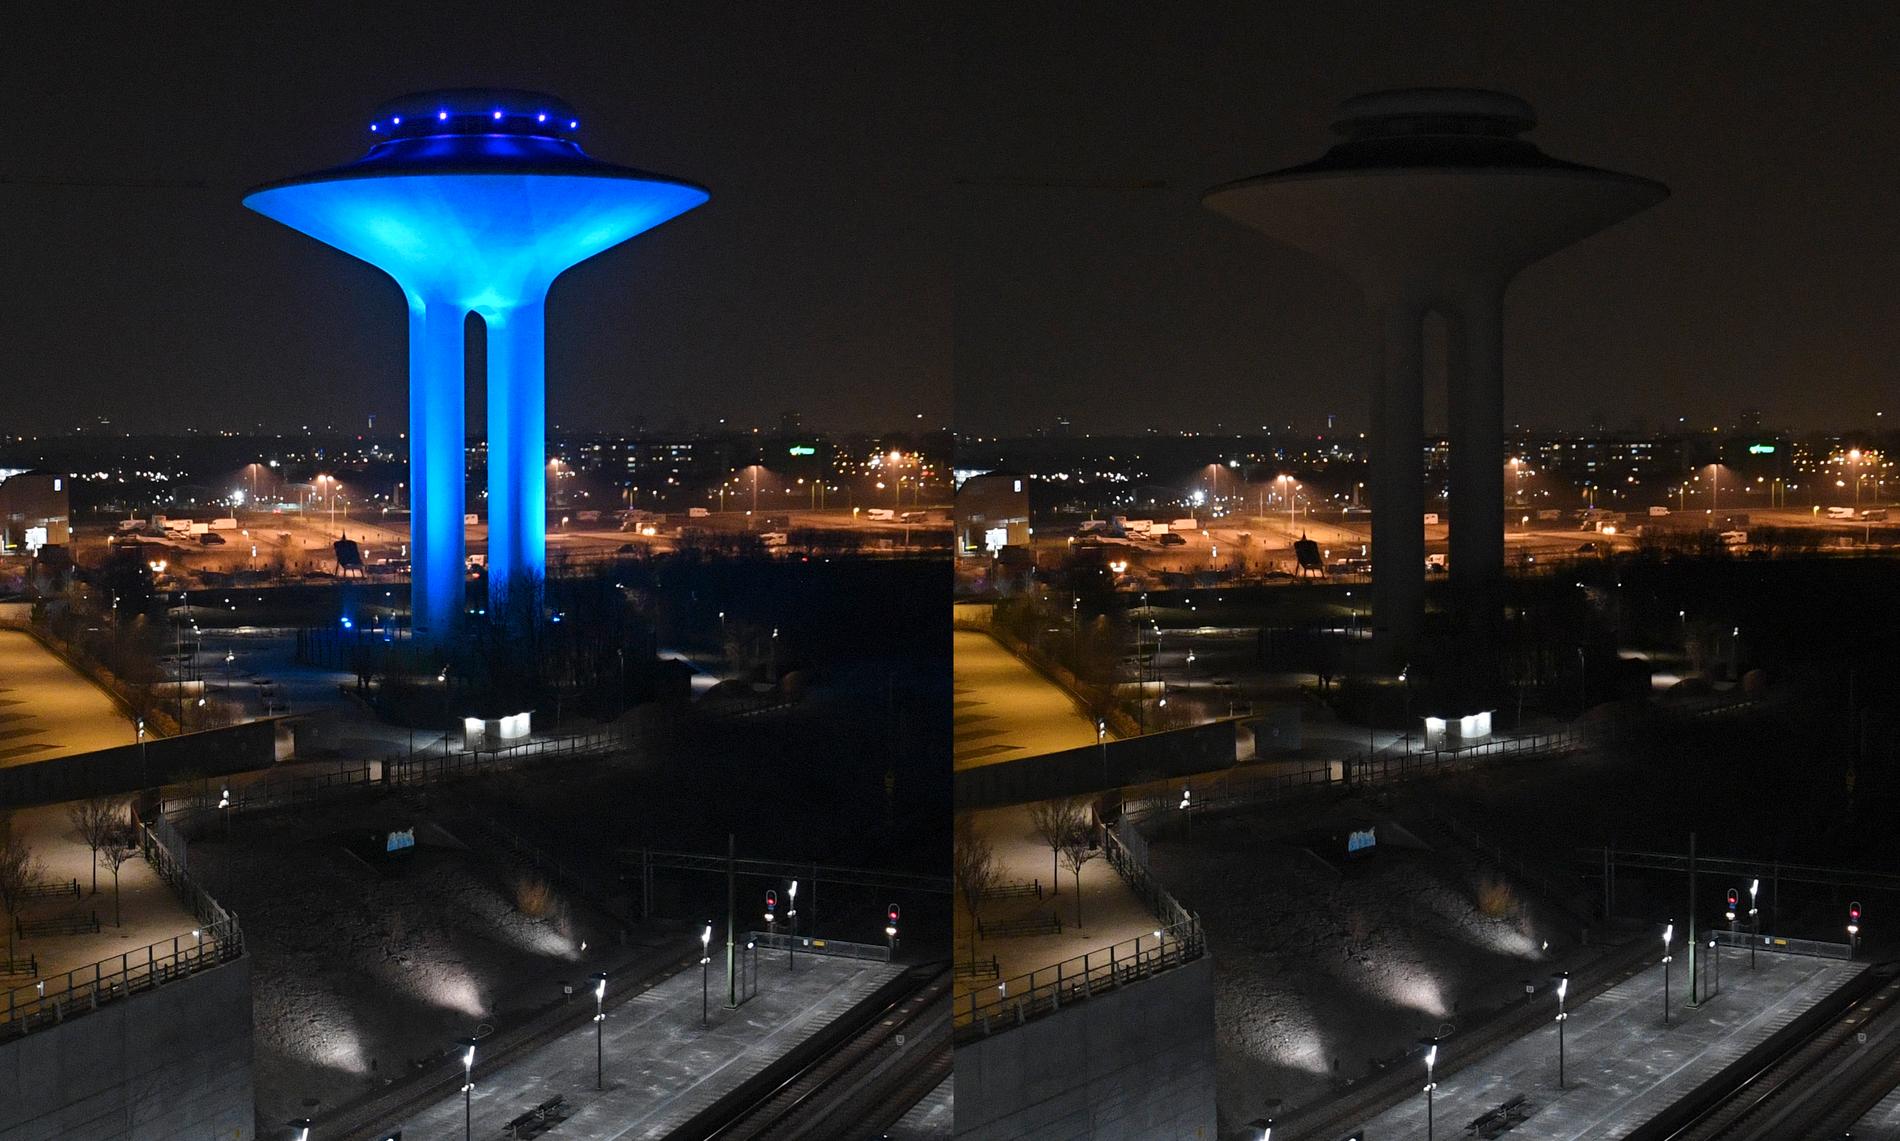 Arkivbild. Vattentornet I Hyllie i Malmö nedsläckt under Earth Hour 2019